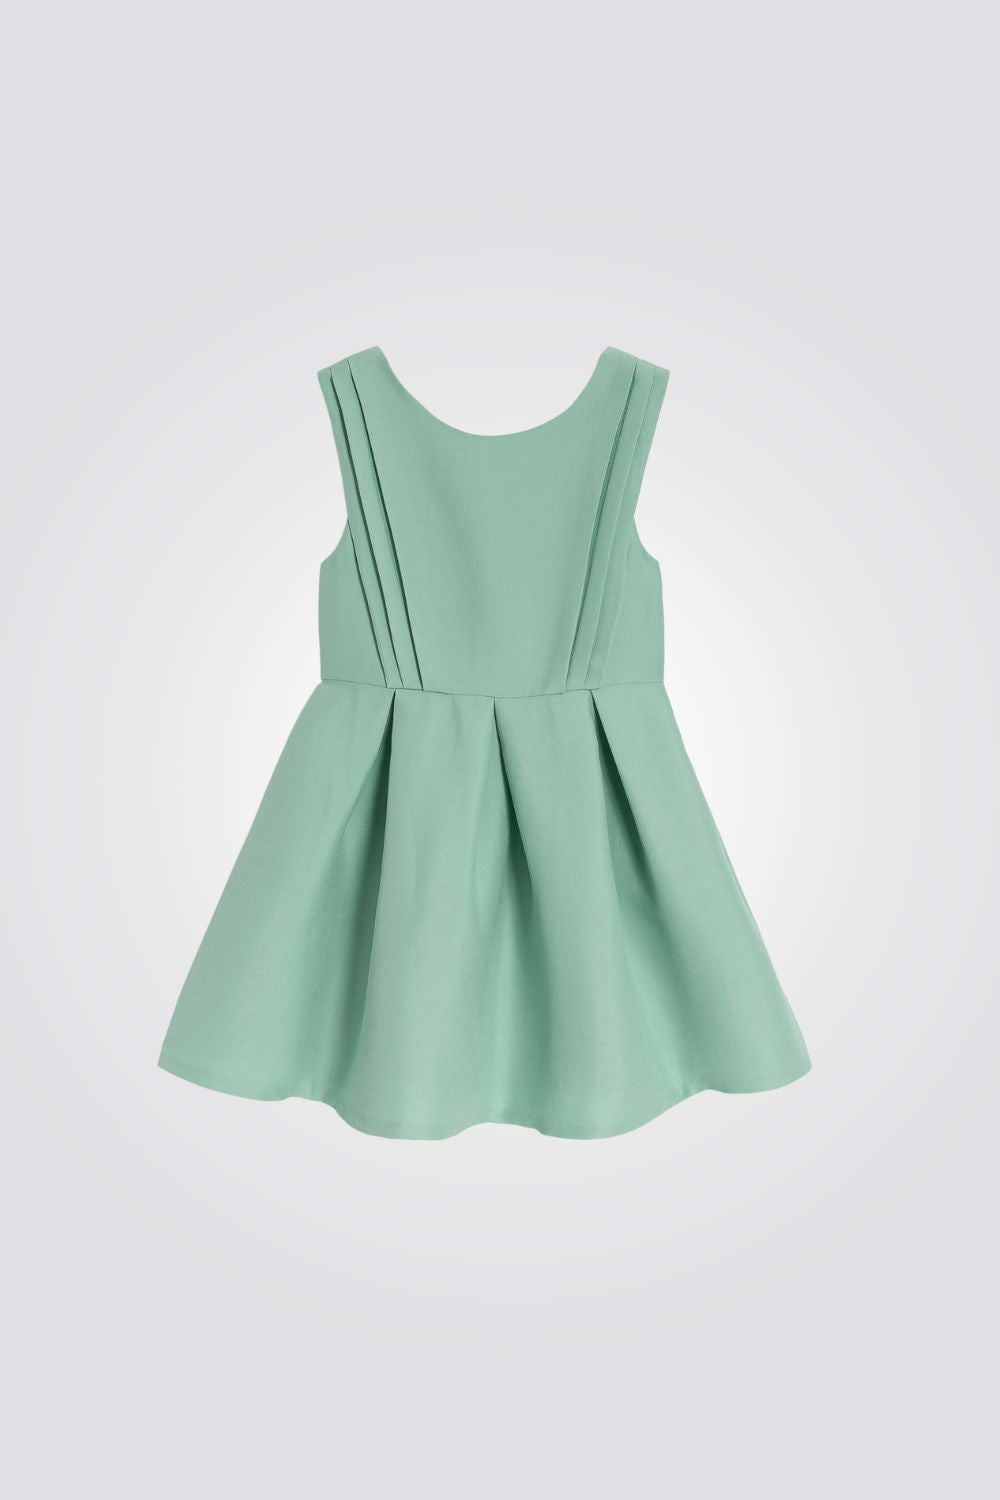 שמלה לילדות בצבע ירוק